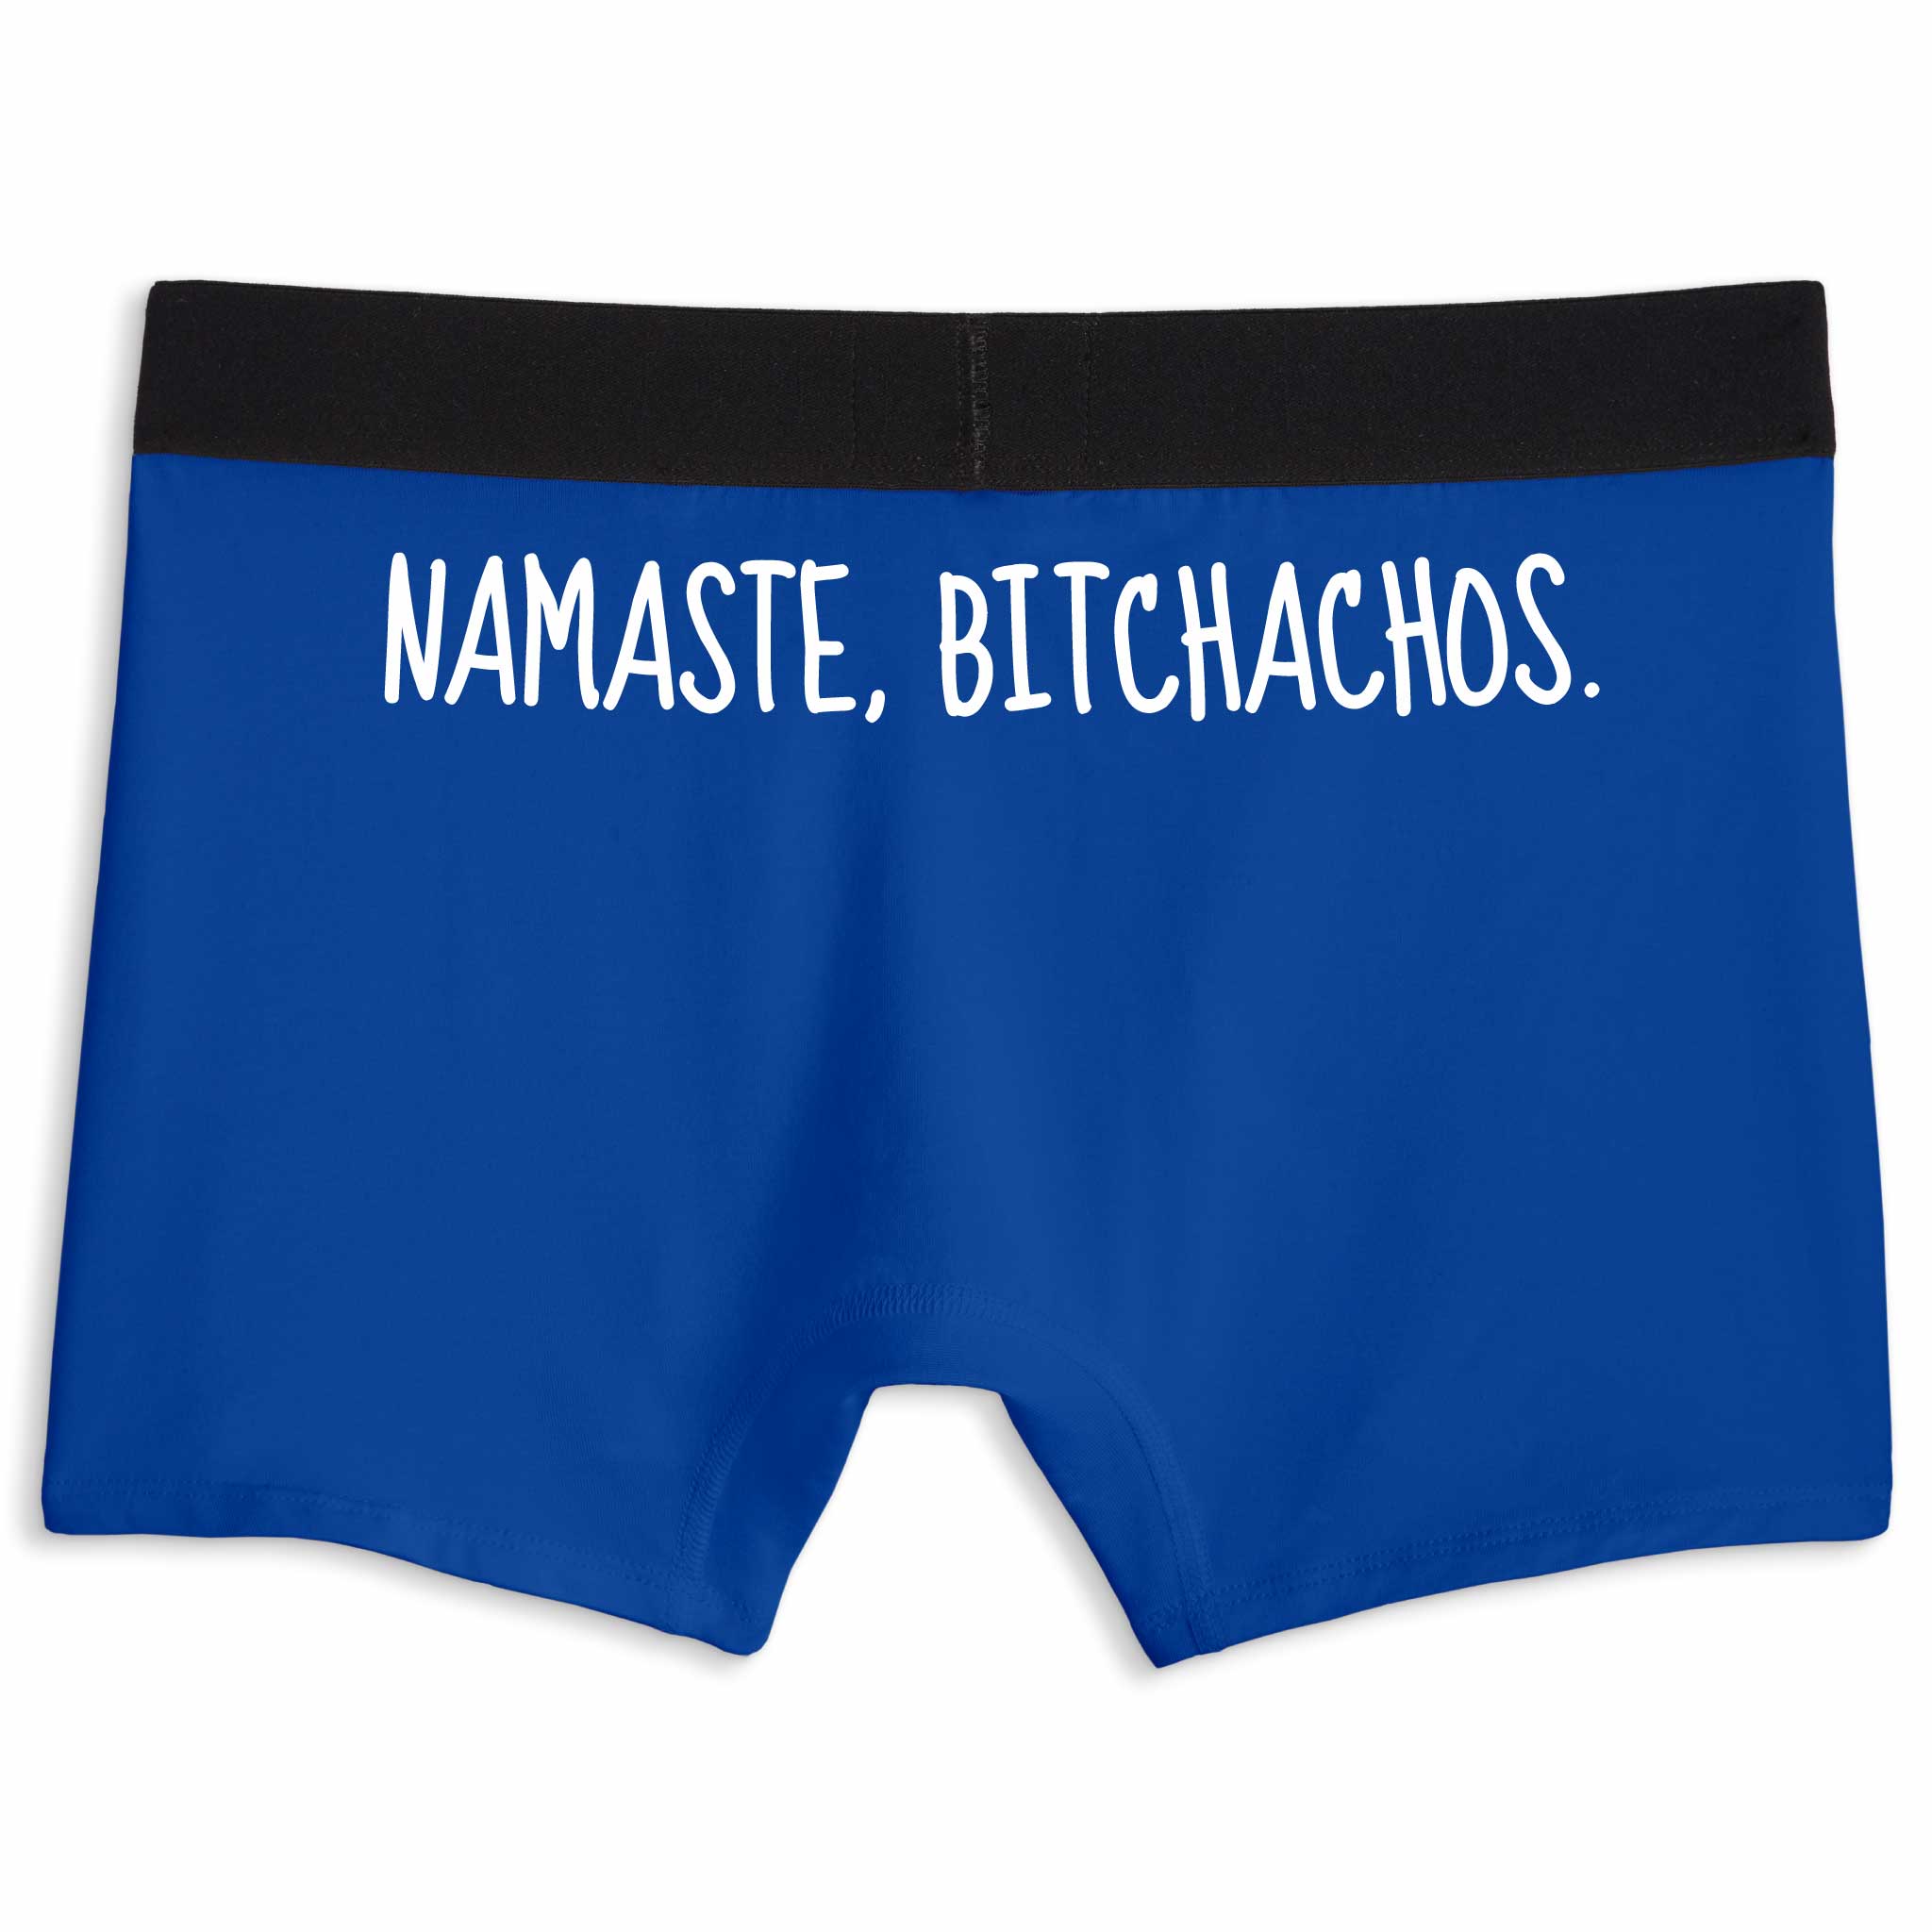 Namaste, Bitchachos. | Boxer Briefs Underwear